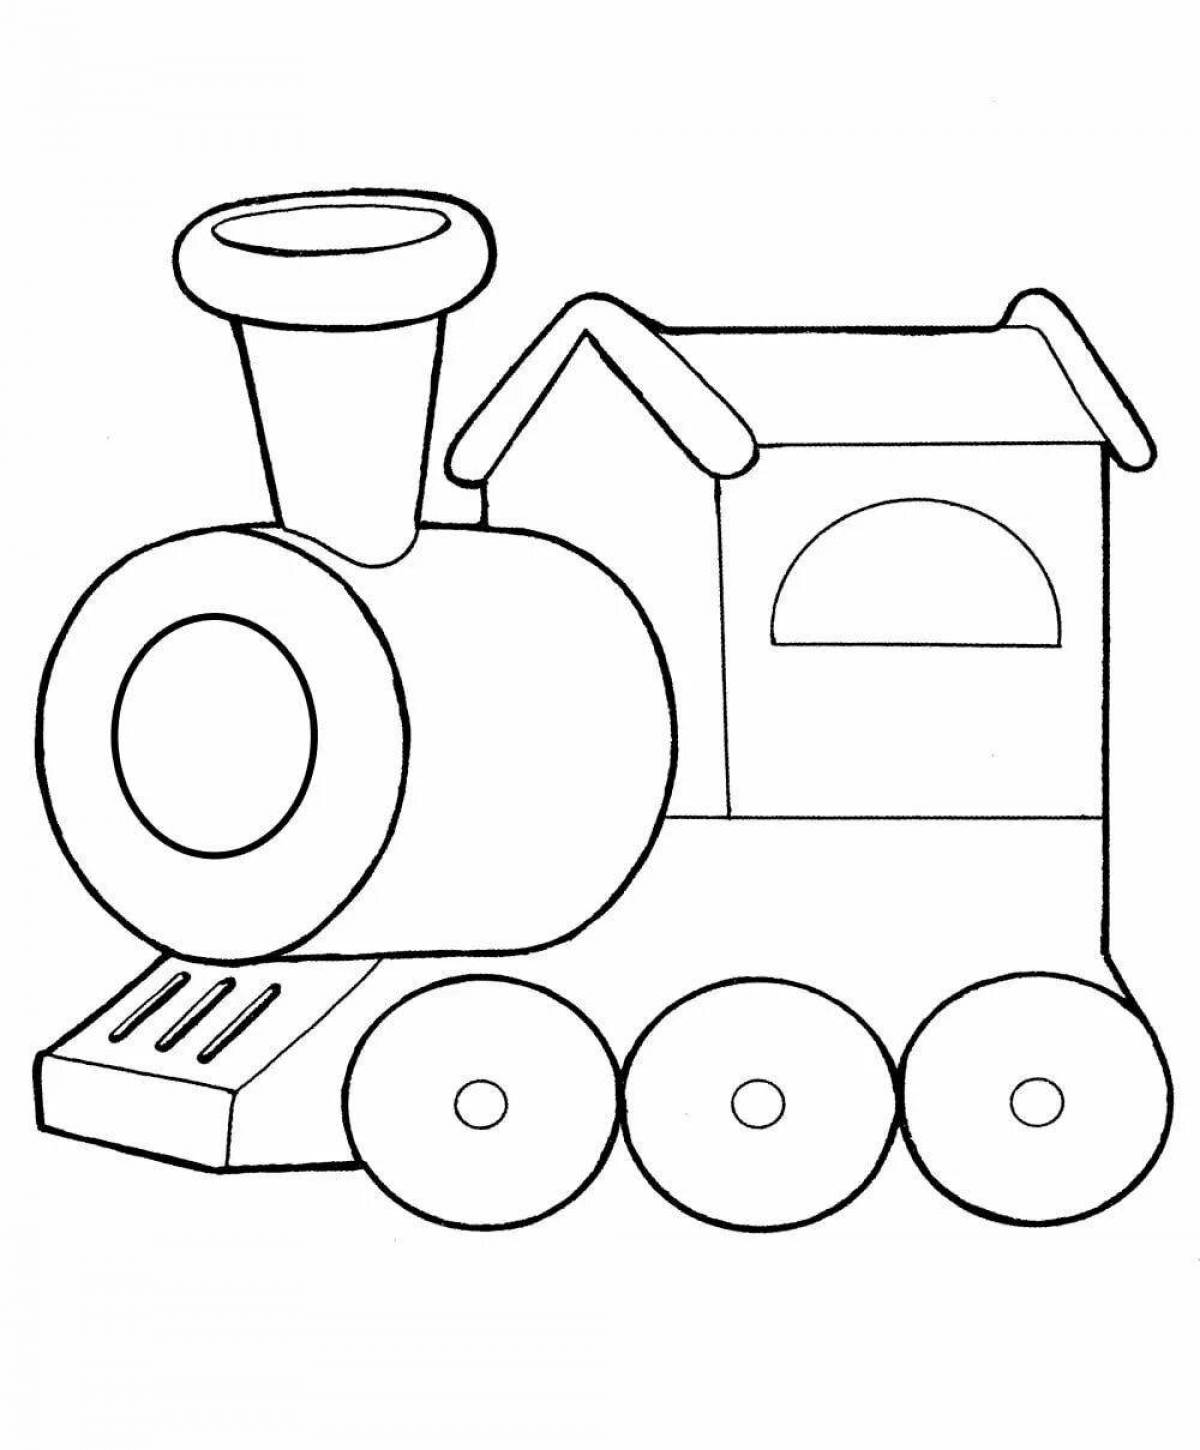 Милый поезд раскраски для детей